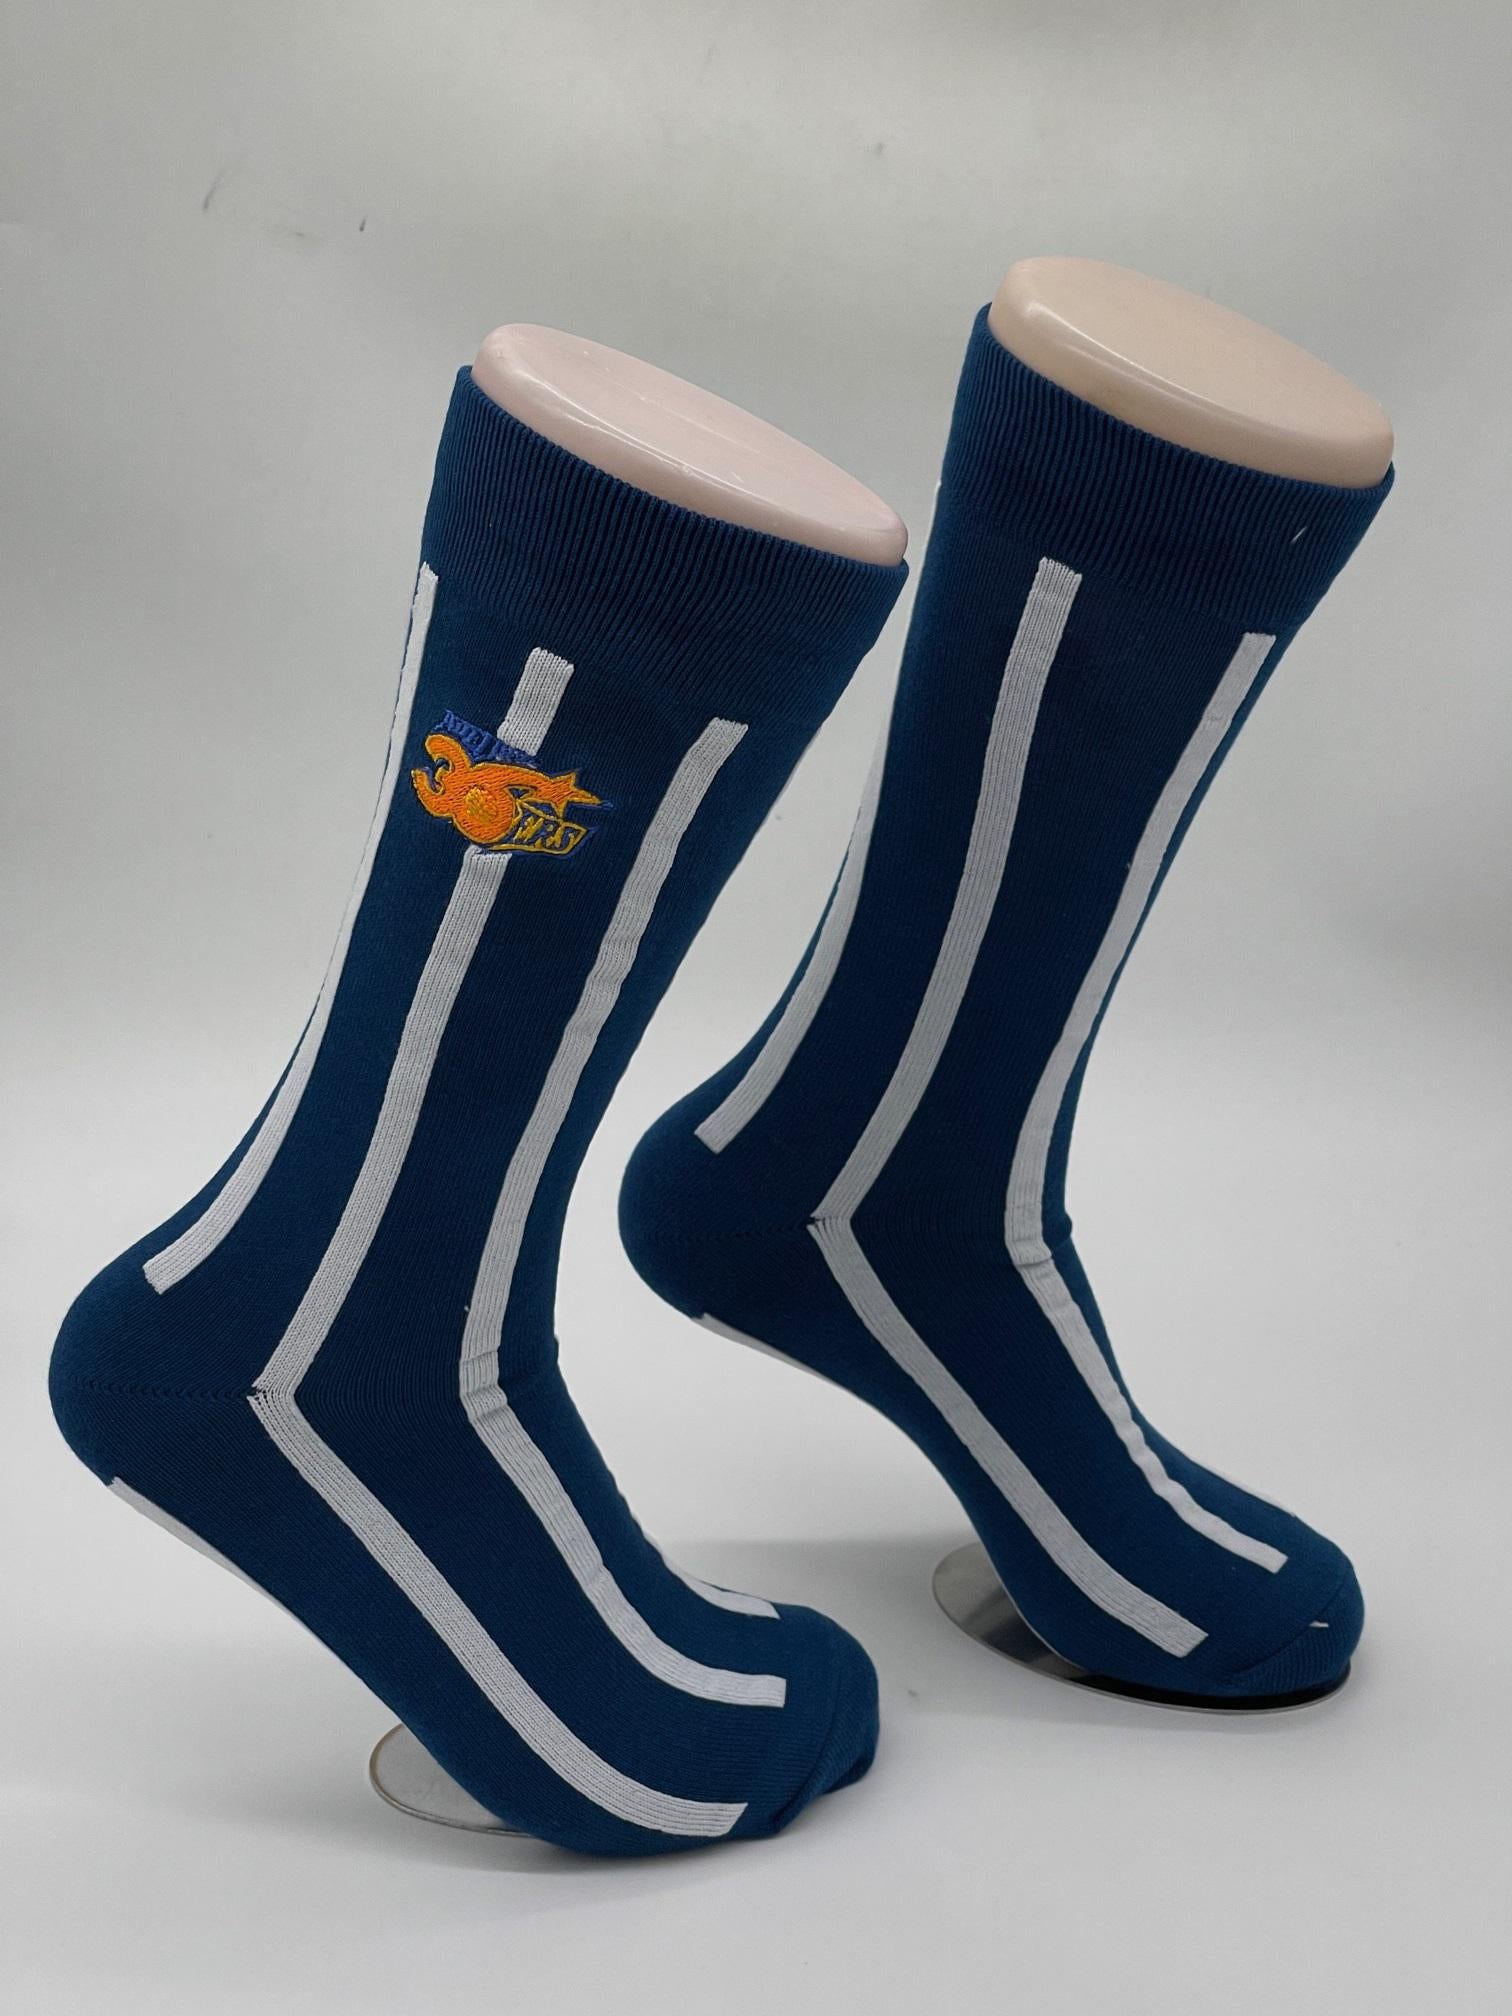 Retro Business Socks - Adelaide 36ers